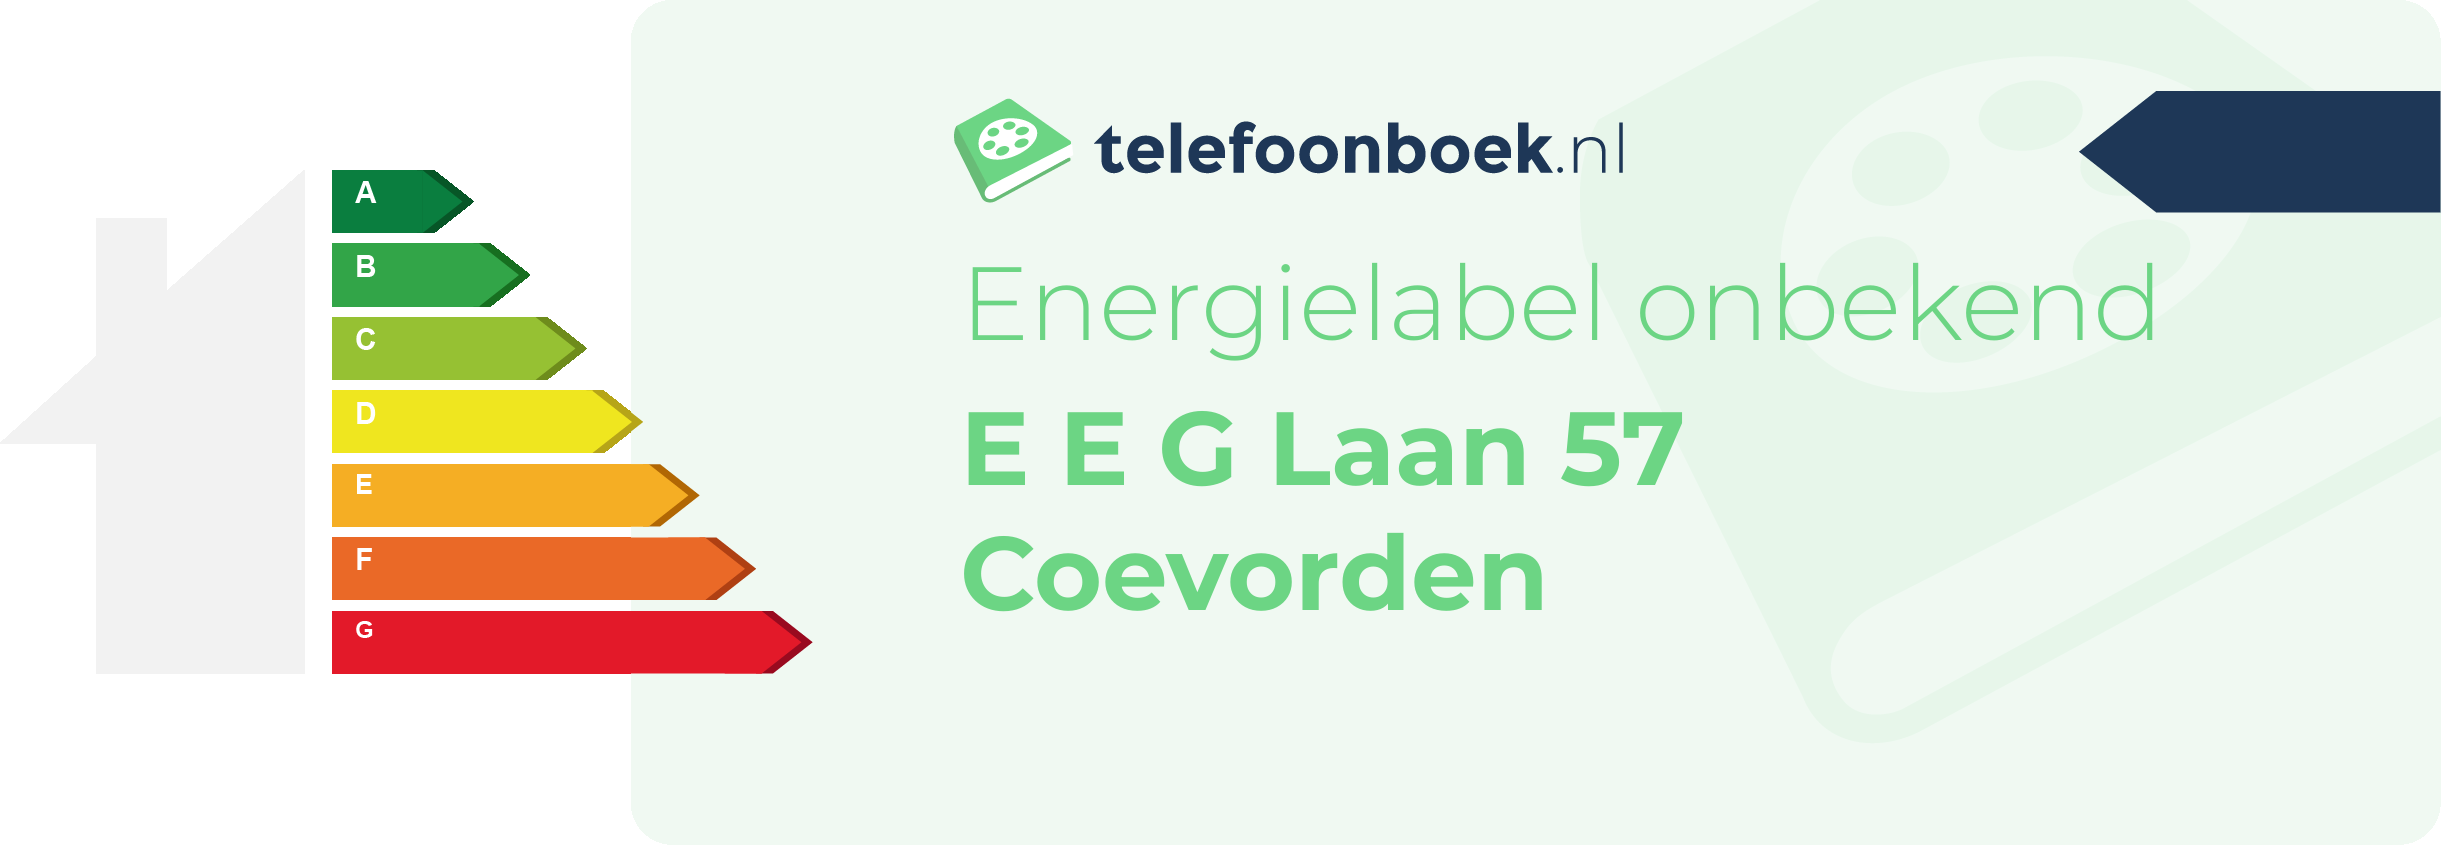 Energielabel E E G Laan 57 Coevorden